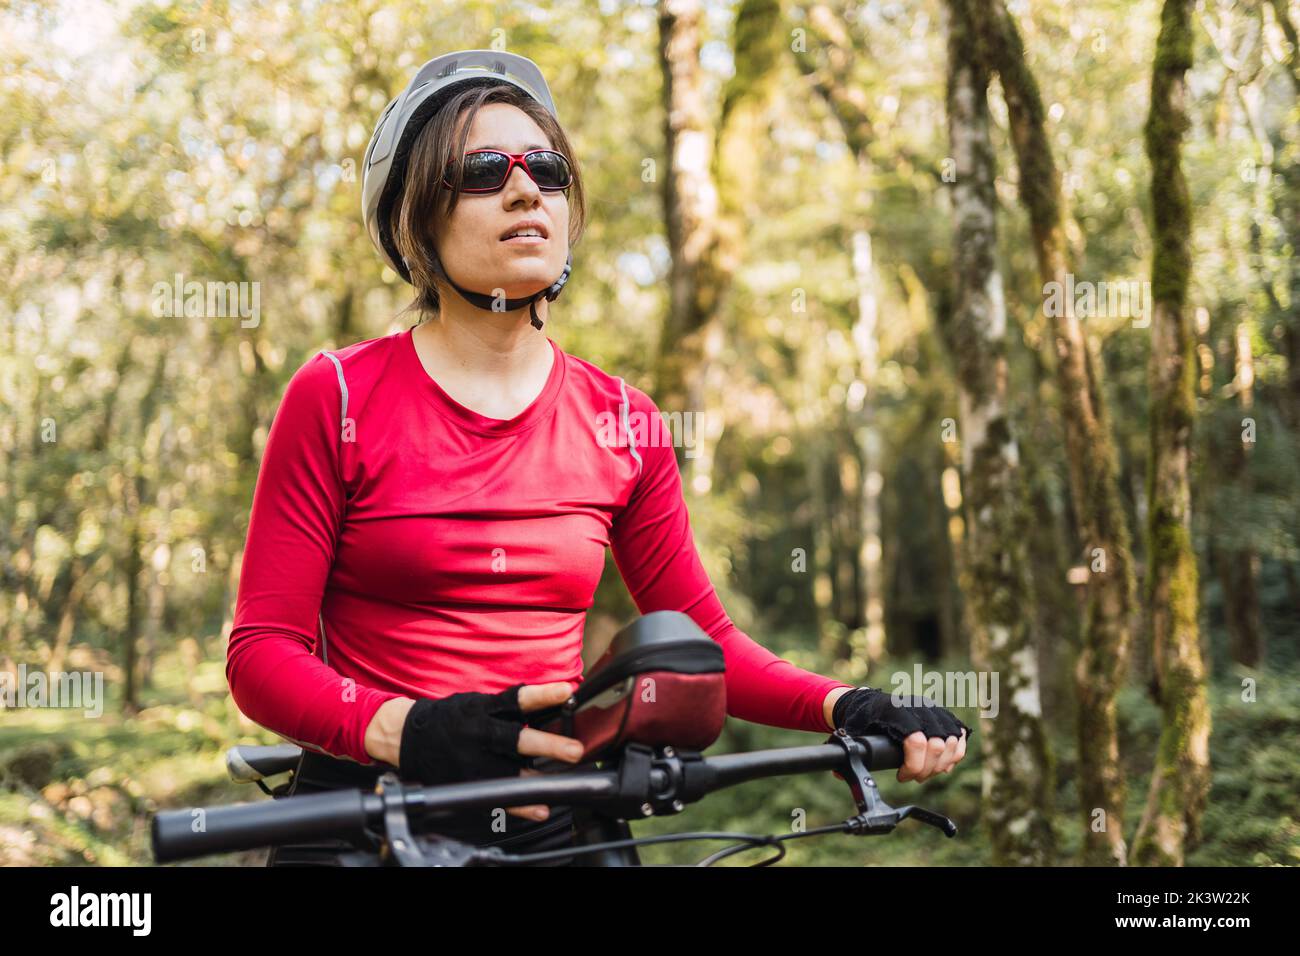 Sport in casco e occhiali da bicicletta guardando avanti mentre contempla la natura dalla bicicletta durante il giro di fondo nei boschi Foto Stock